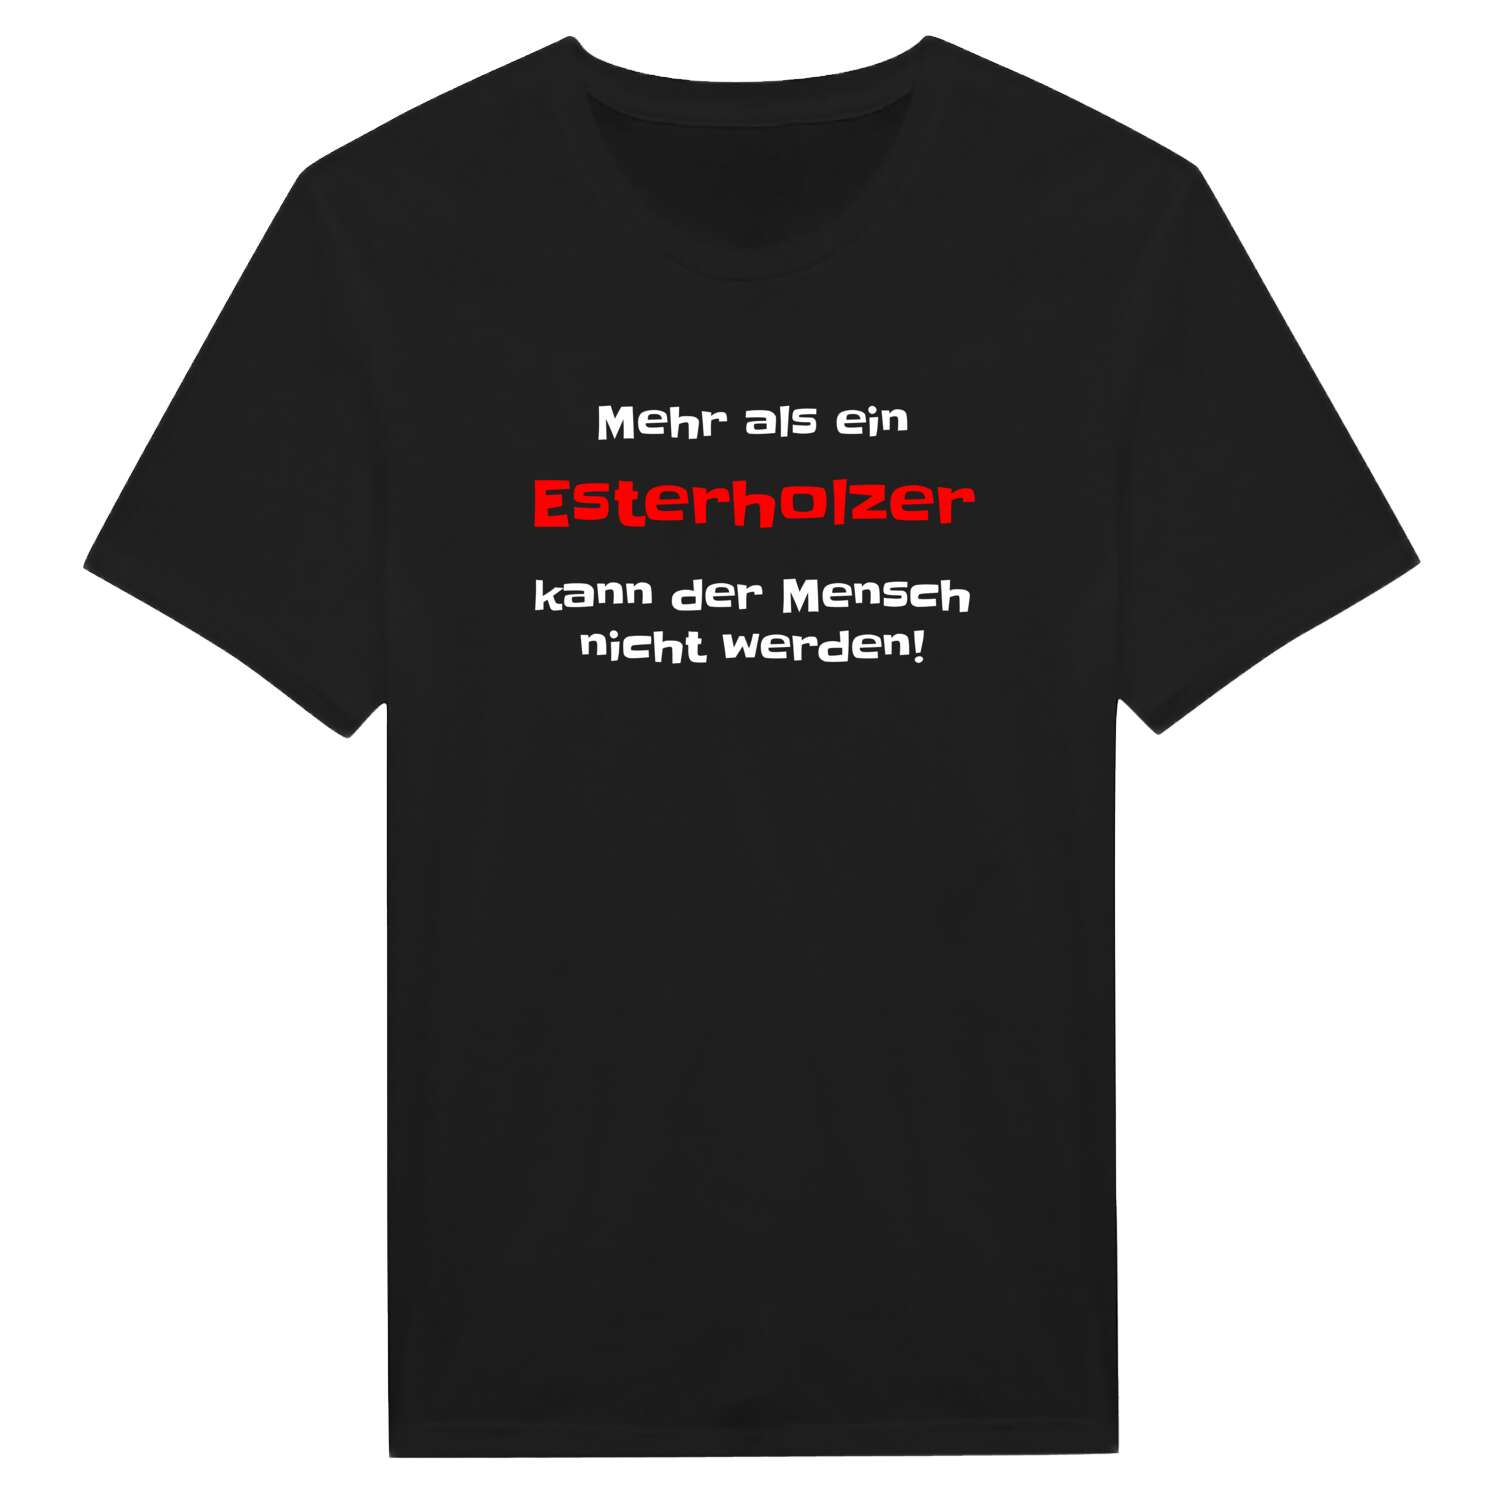 Esterholz T-Shirt »Mehr als ein«